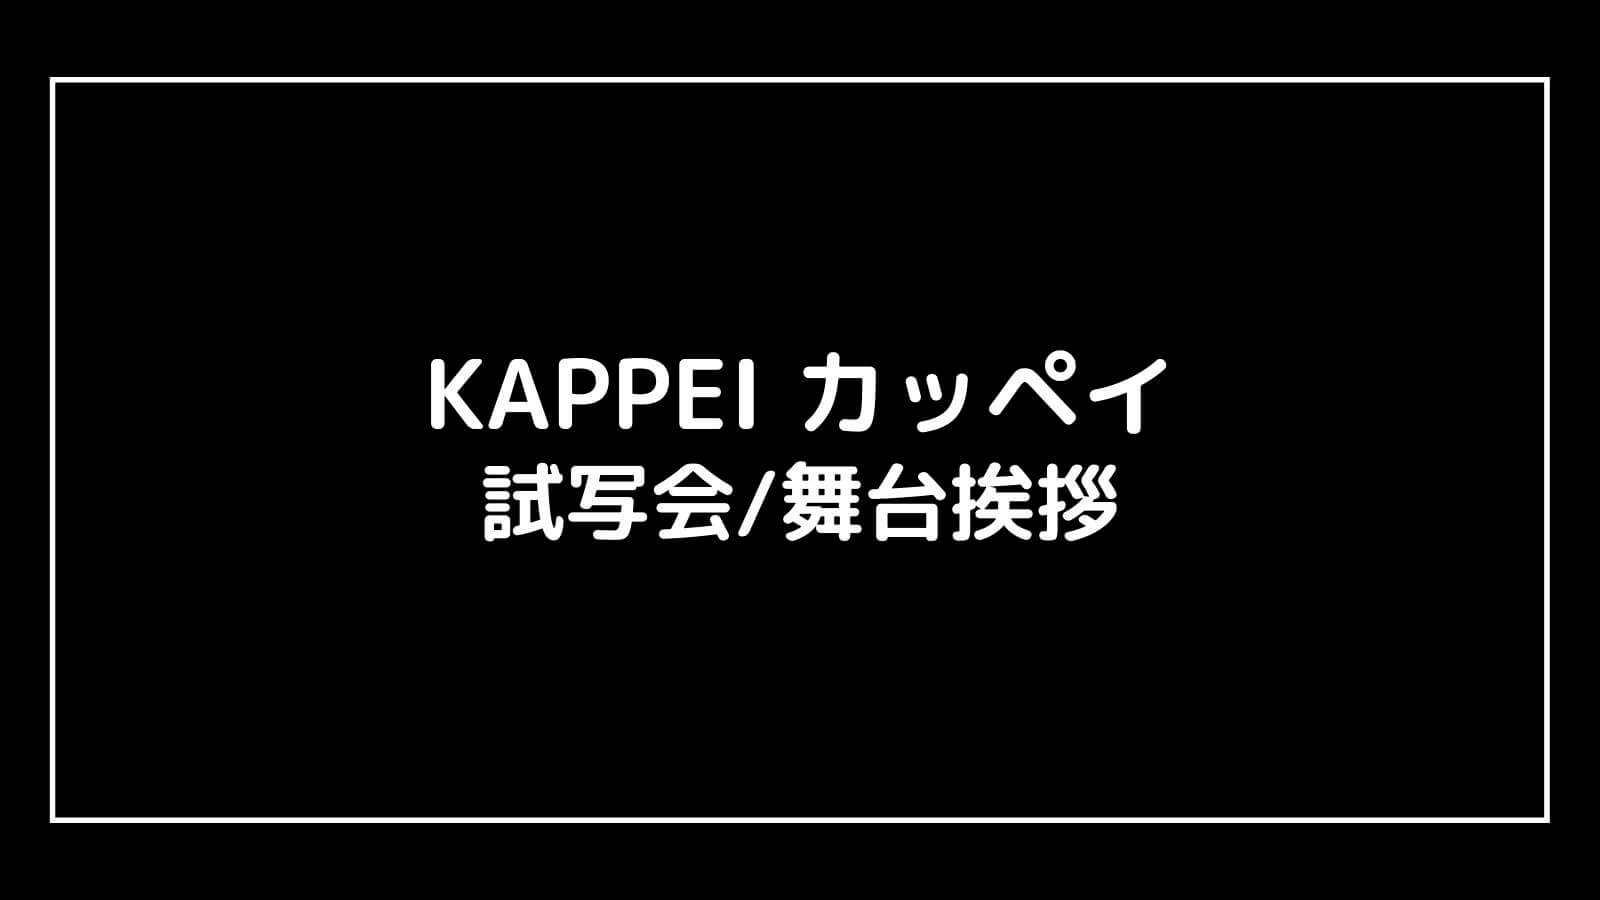 Kappei 舞台 挨拶